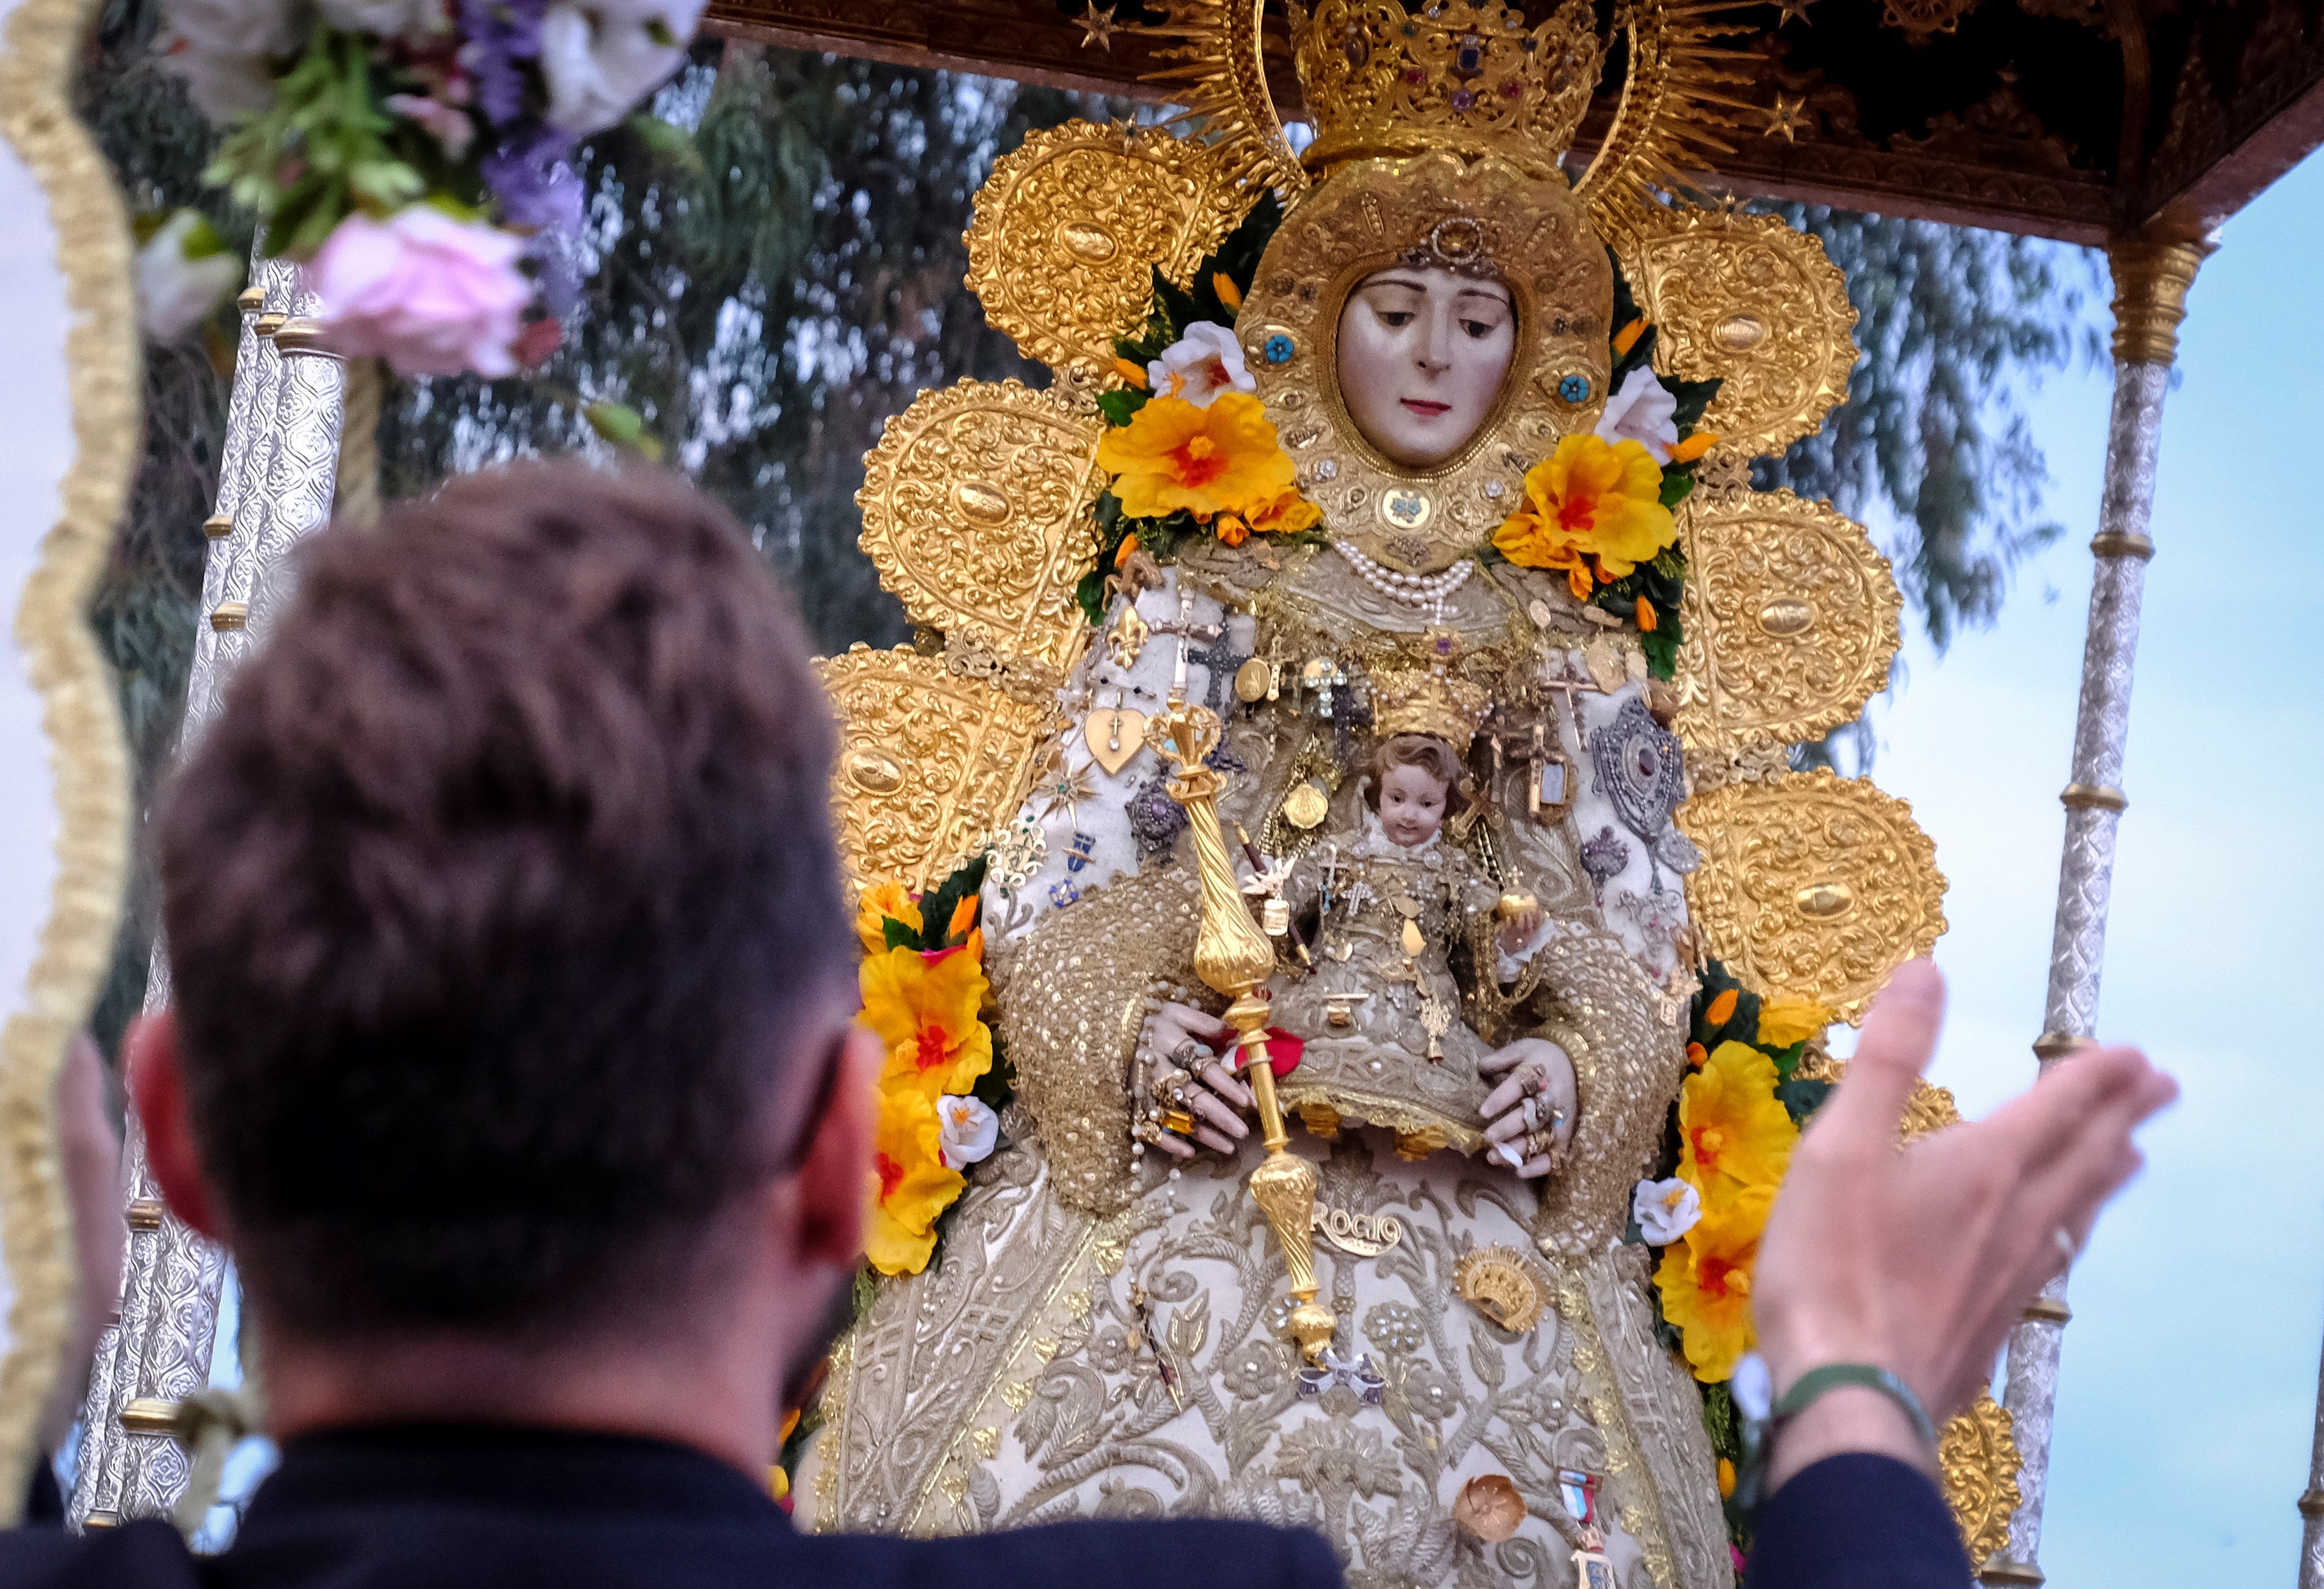 La polémica sátira sobre la Virgen del Rocío en TV3 que ha sido duramente  criticada desde Andalucía